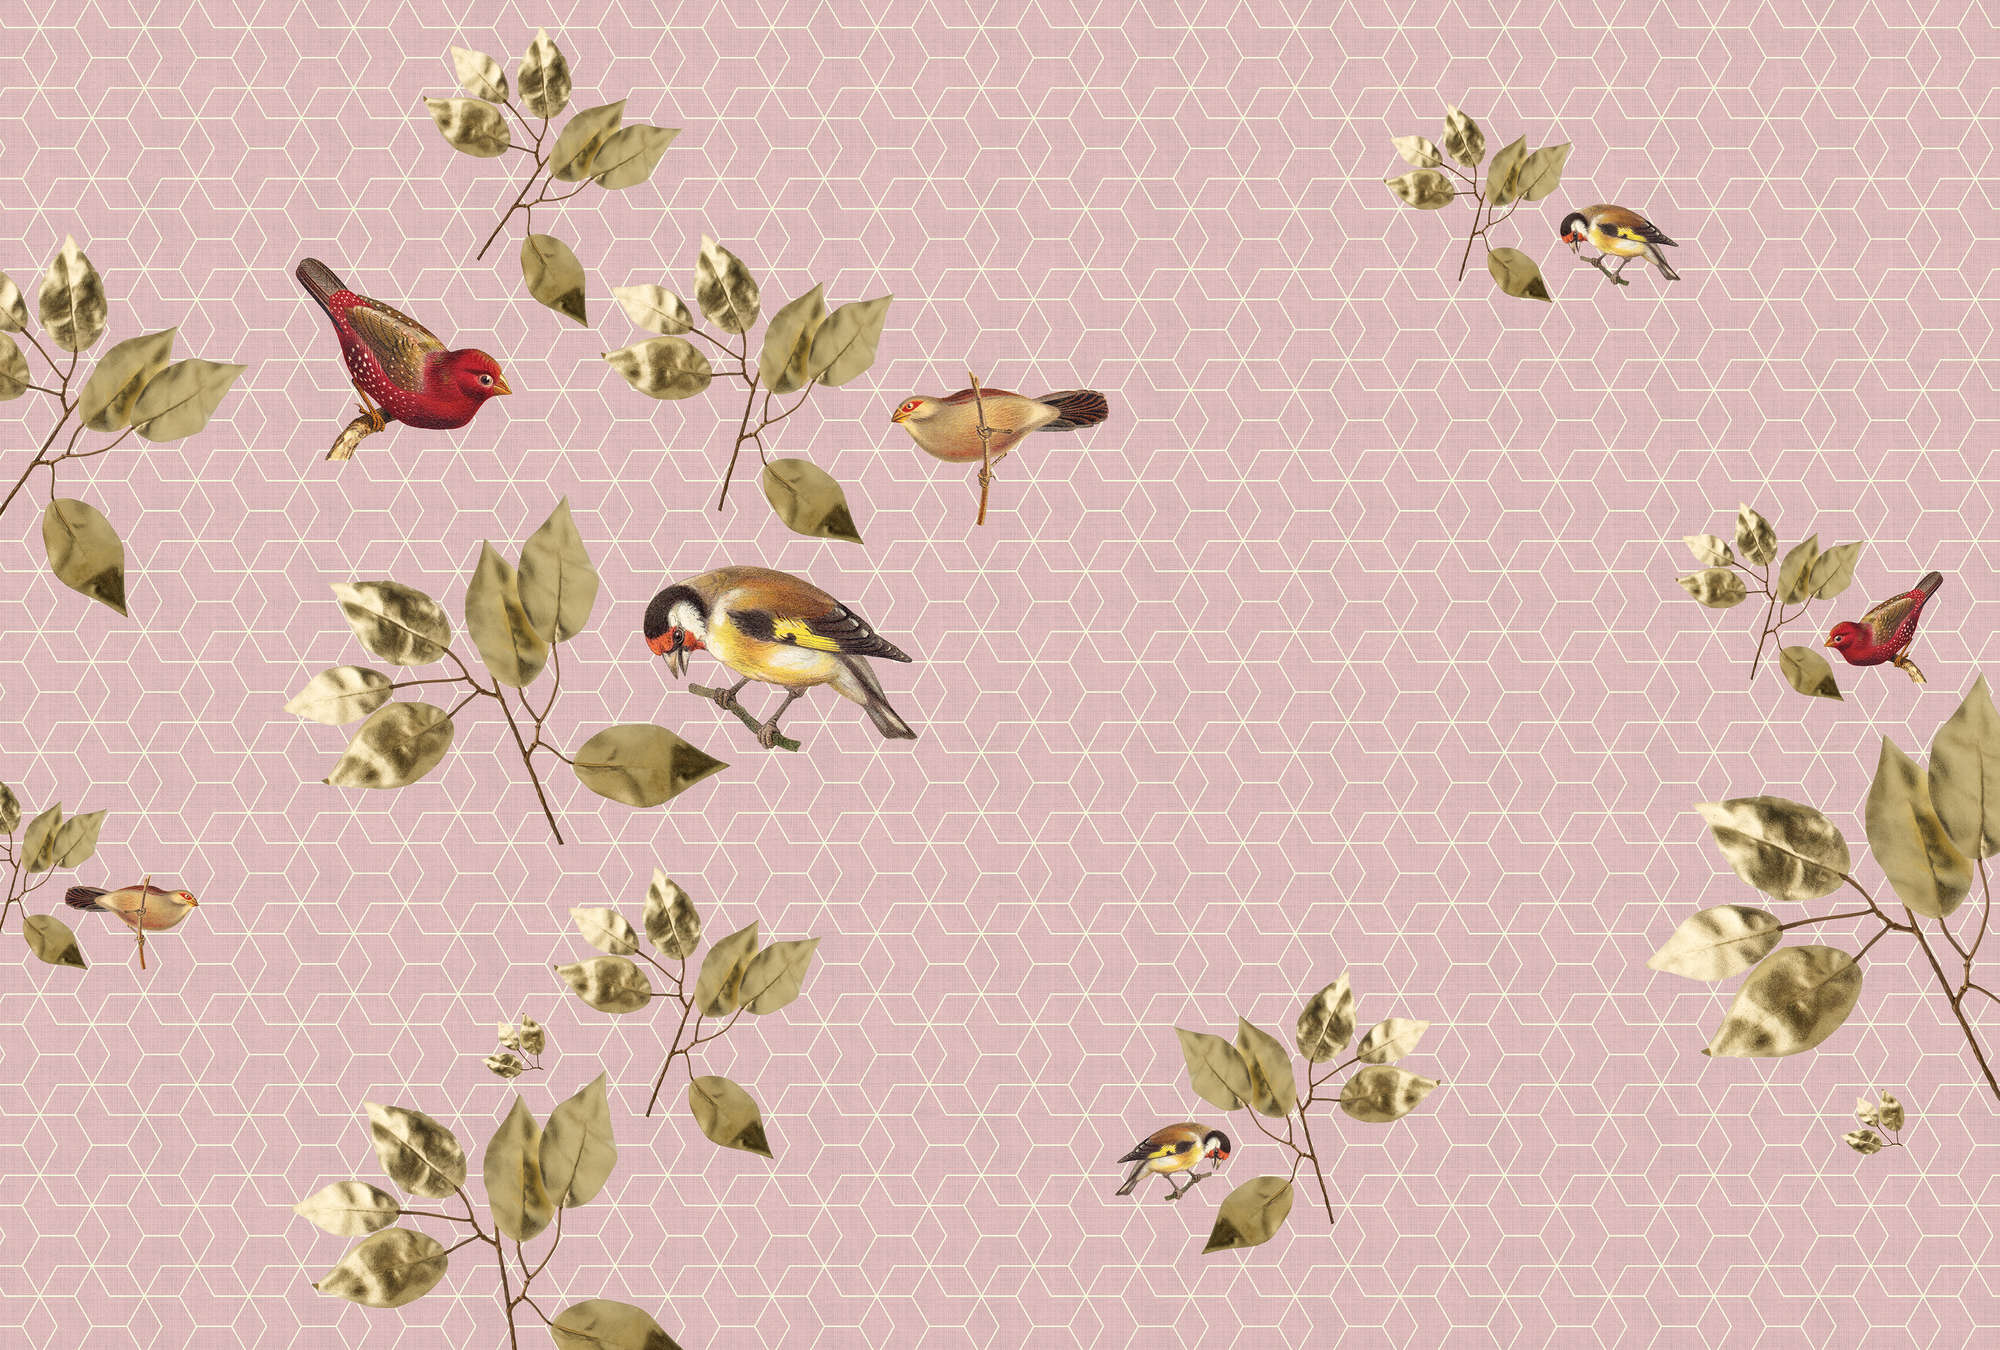             Brilliant Birds 1 - Papel Pintado Geométrico con Pájaros y Hojas Patrón - Verde, Rosa | Tejido sin tejer liso mate
        